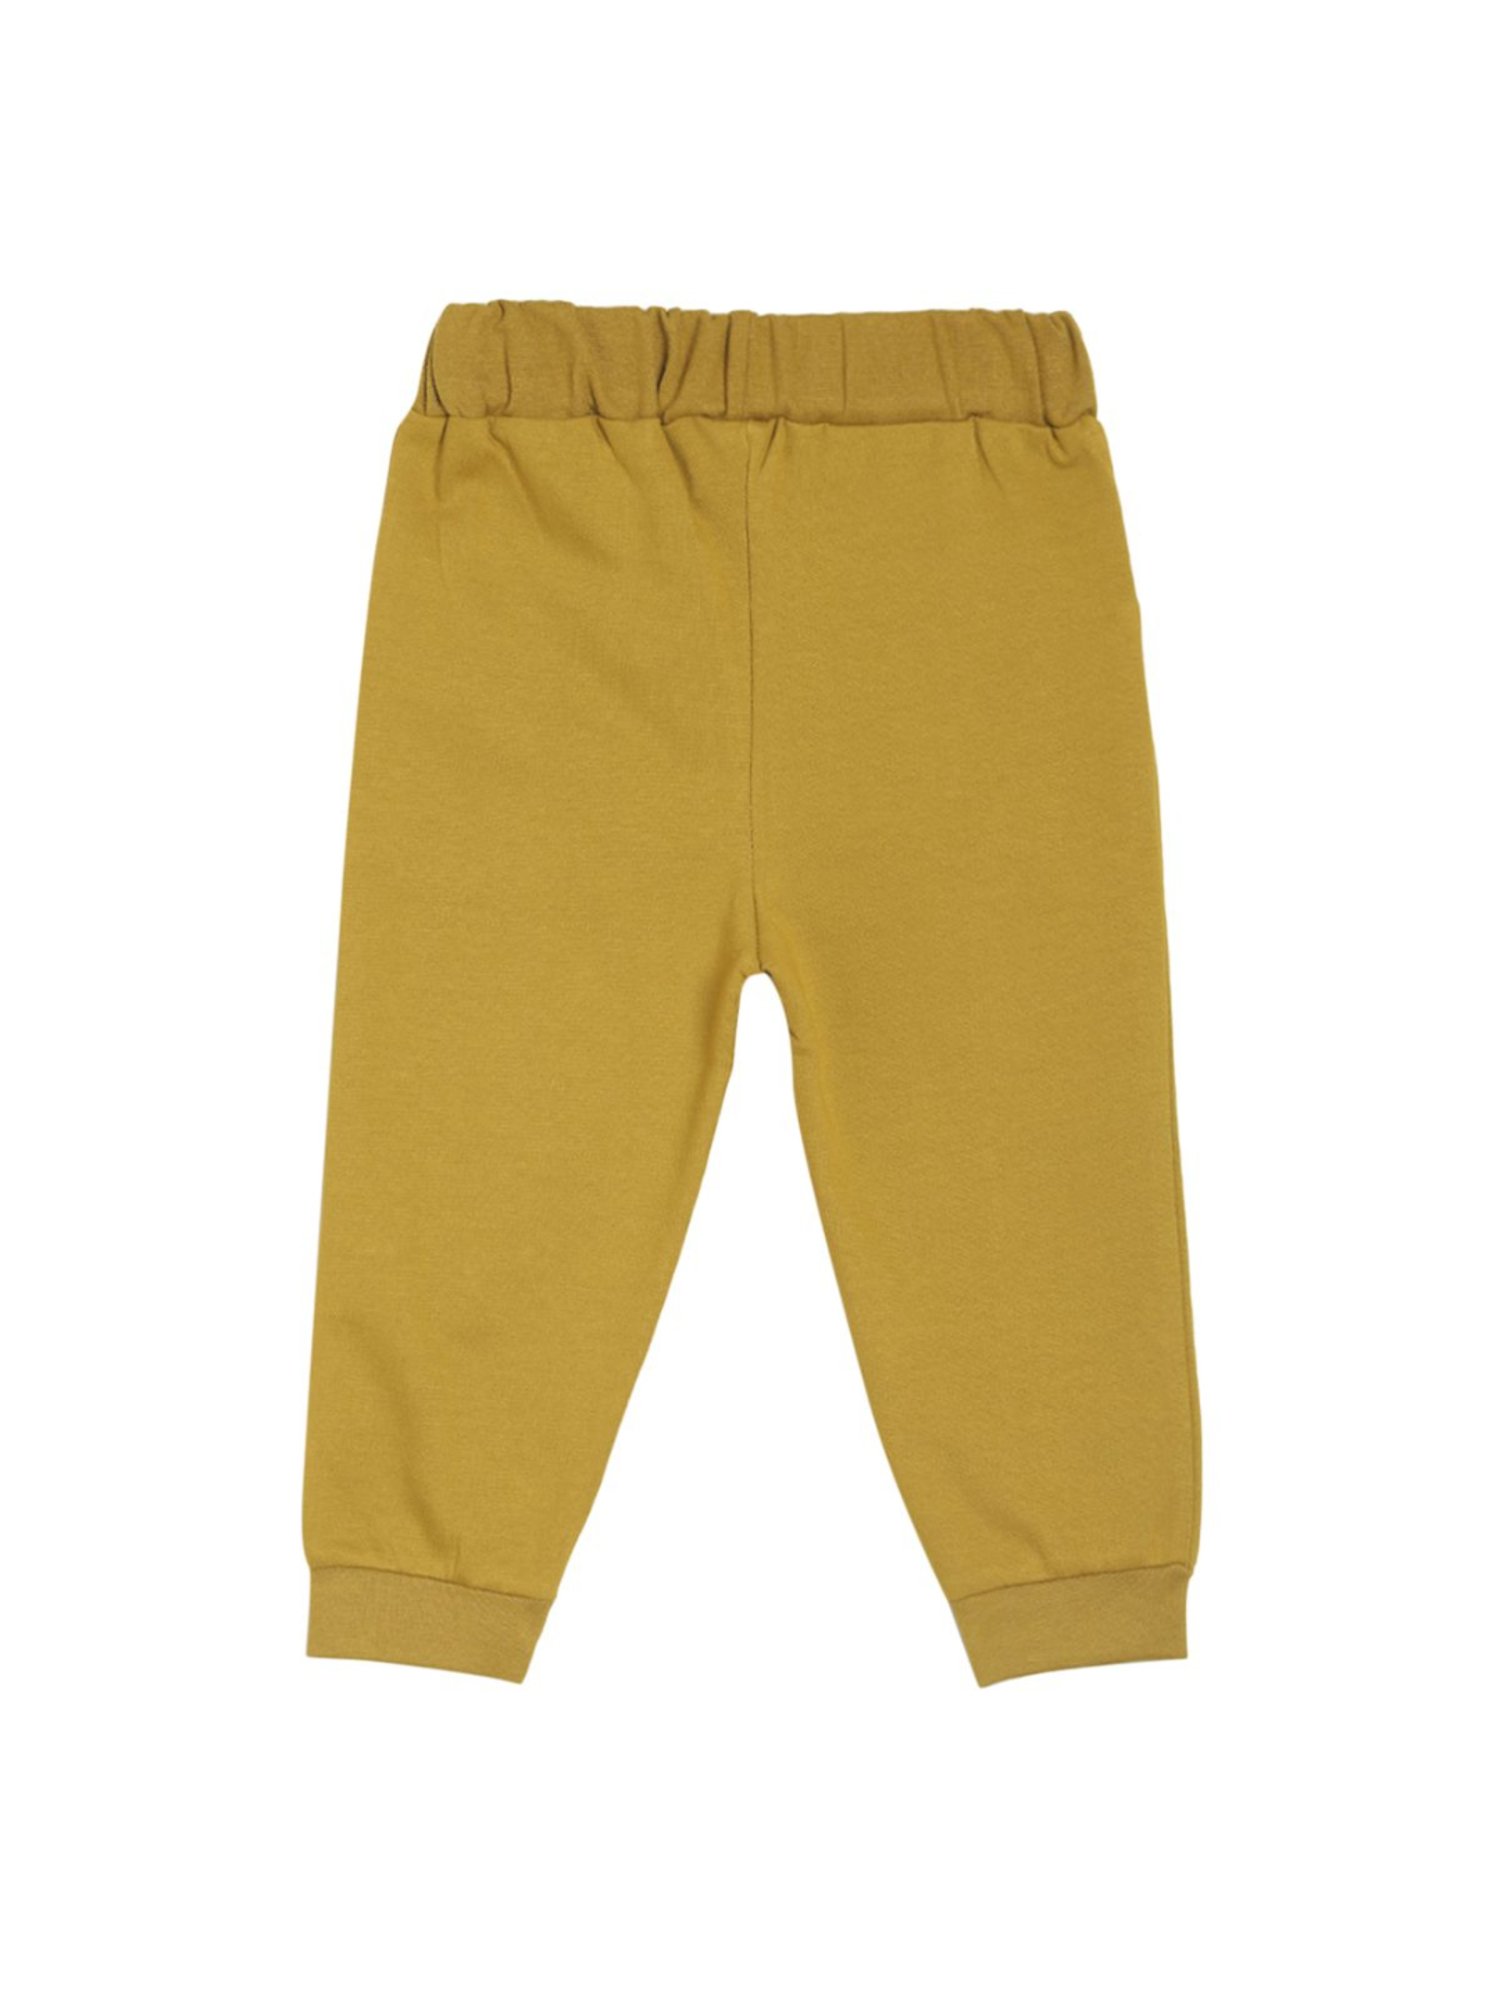 CHEROKEE Regular Fit Boys Yellow Trousers  Buy CHEROKEE Regular Fit Boys  Yellow Trousers Online at Best Prices in India  Flipkartcom